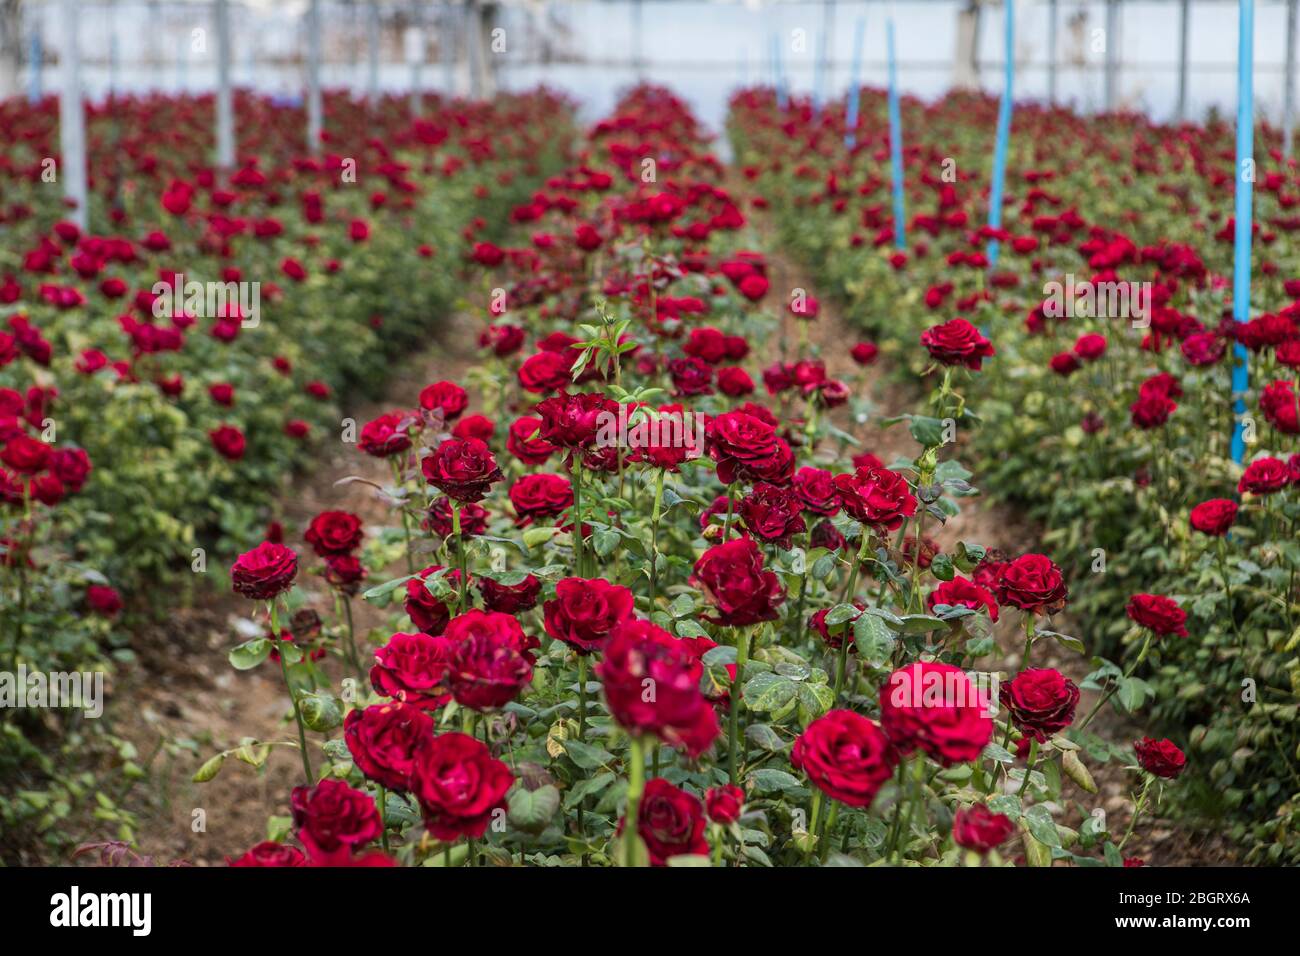 Rosen in einem Gewächshaus auf der Plantage gesehen.die Plantage Flors Pons  in Santa Susanna verkaufte letztes Jahr rund 7 Millionen Rosen, aber in  diesem Jahr wird der Umsatz aufgrund der Coronavirus-Krise beeinträchtigt.